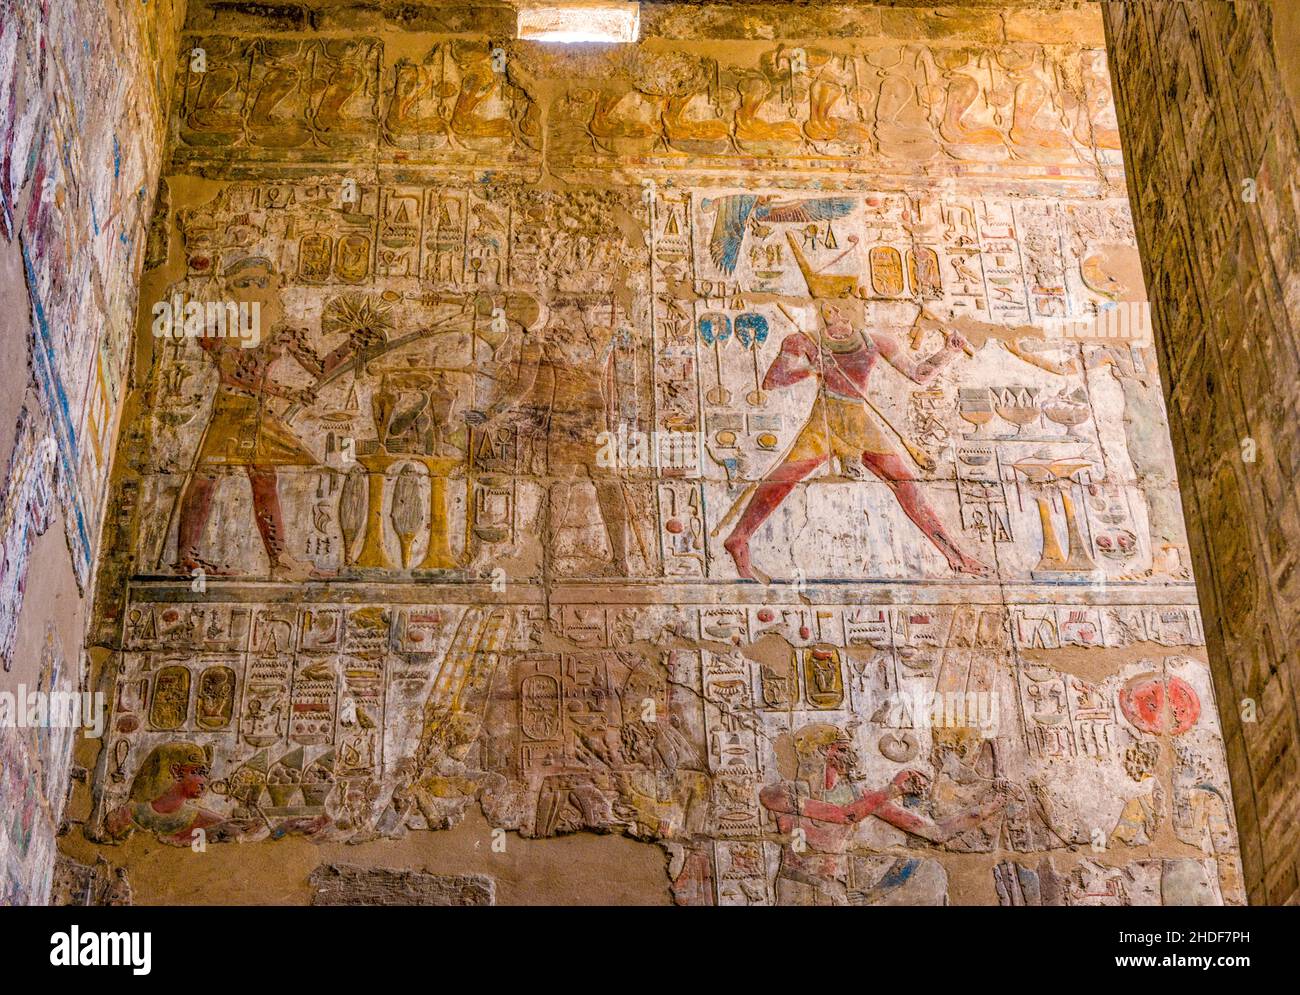 pharaoh, relief, karnak temple, egyptian art, pharaohs, reliefs, karnak temples Stock Photo